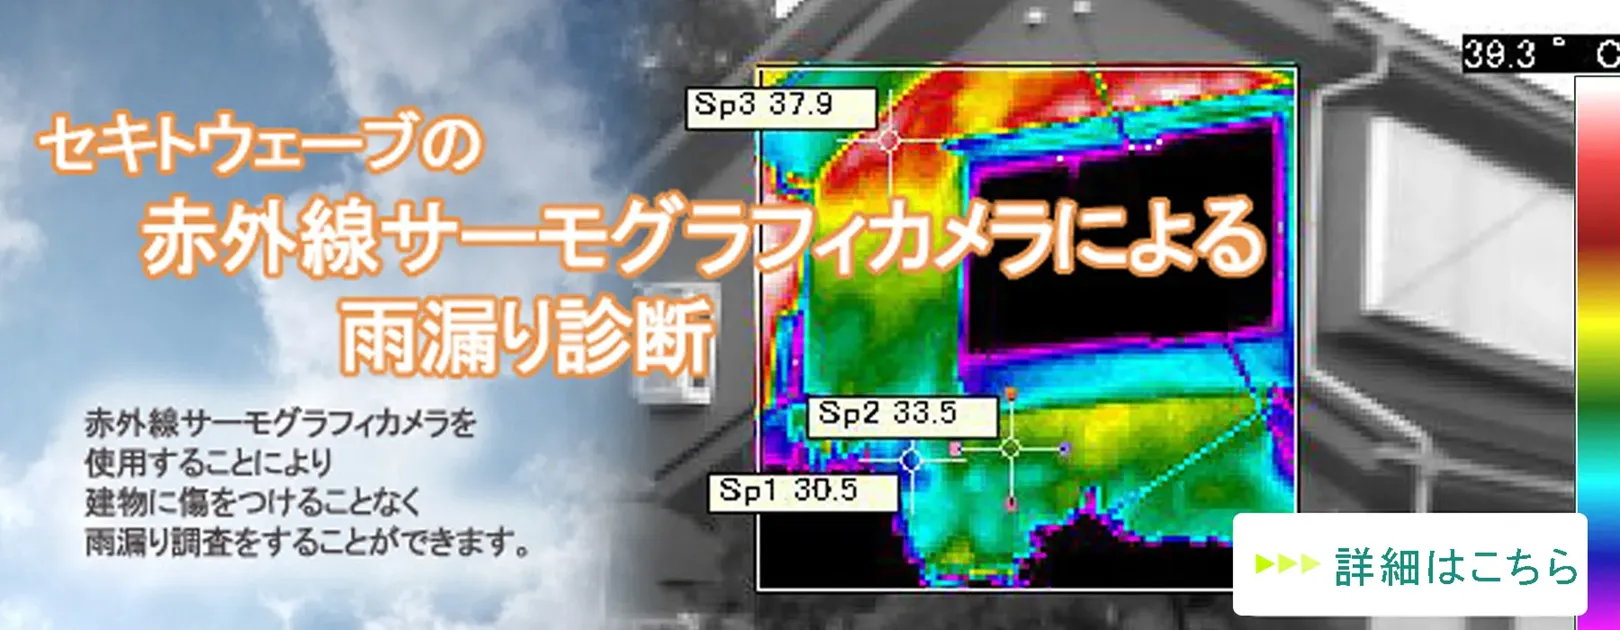 赤外線サーモグラフィも使用できる雨漏り調査